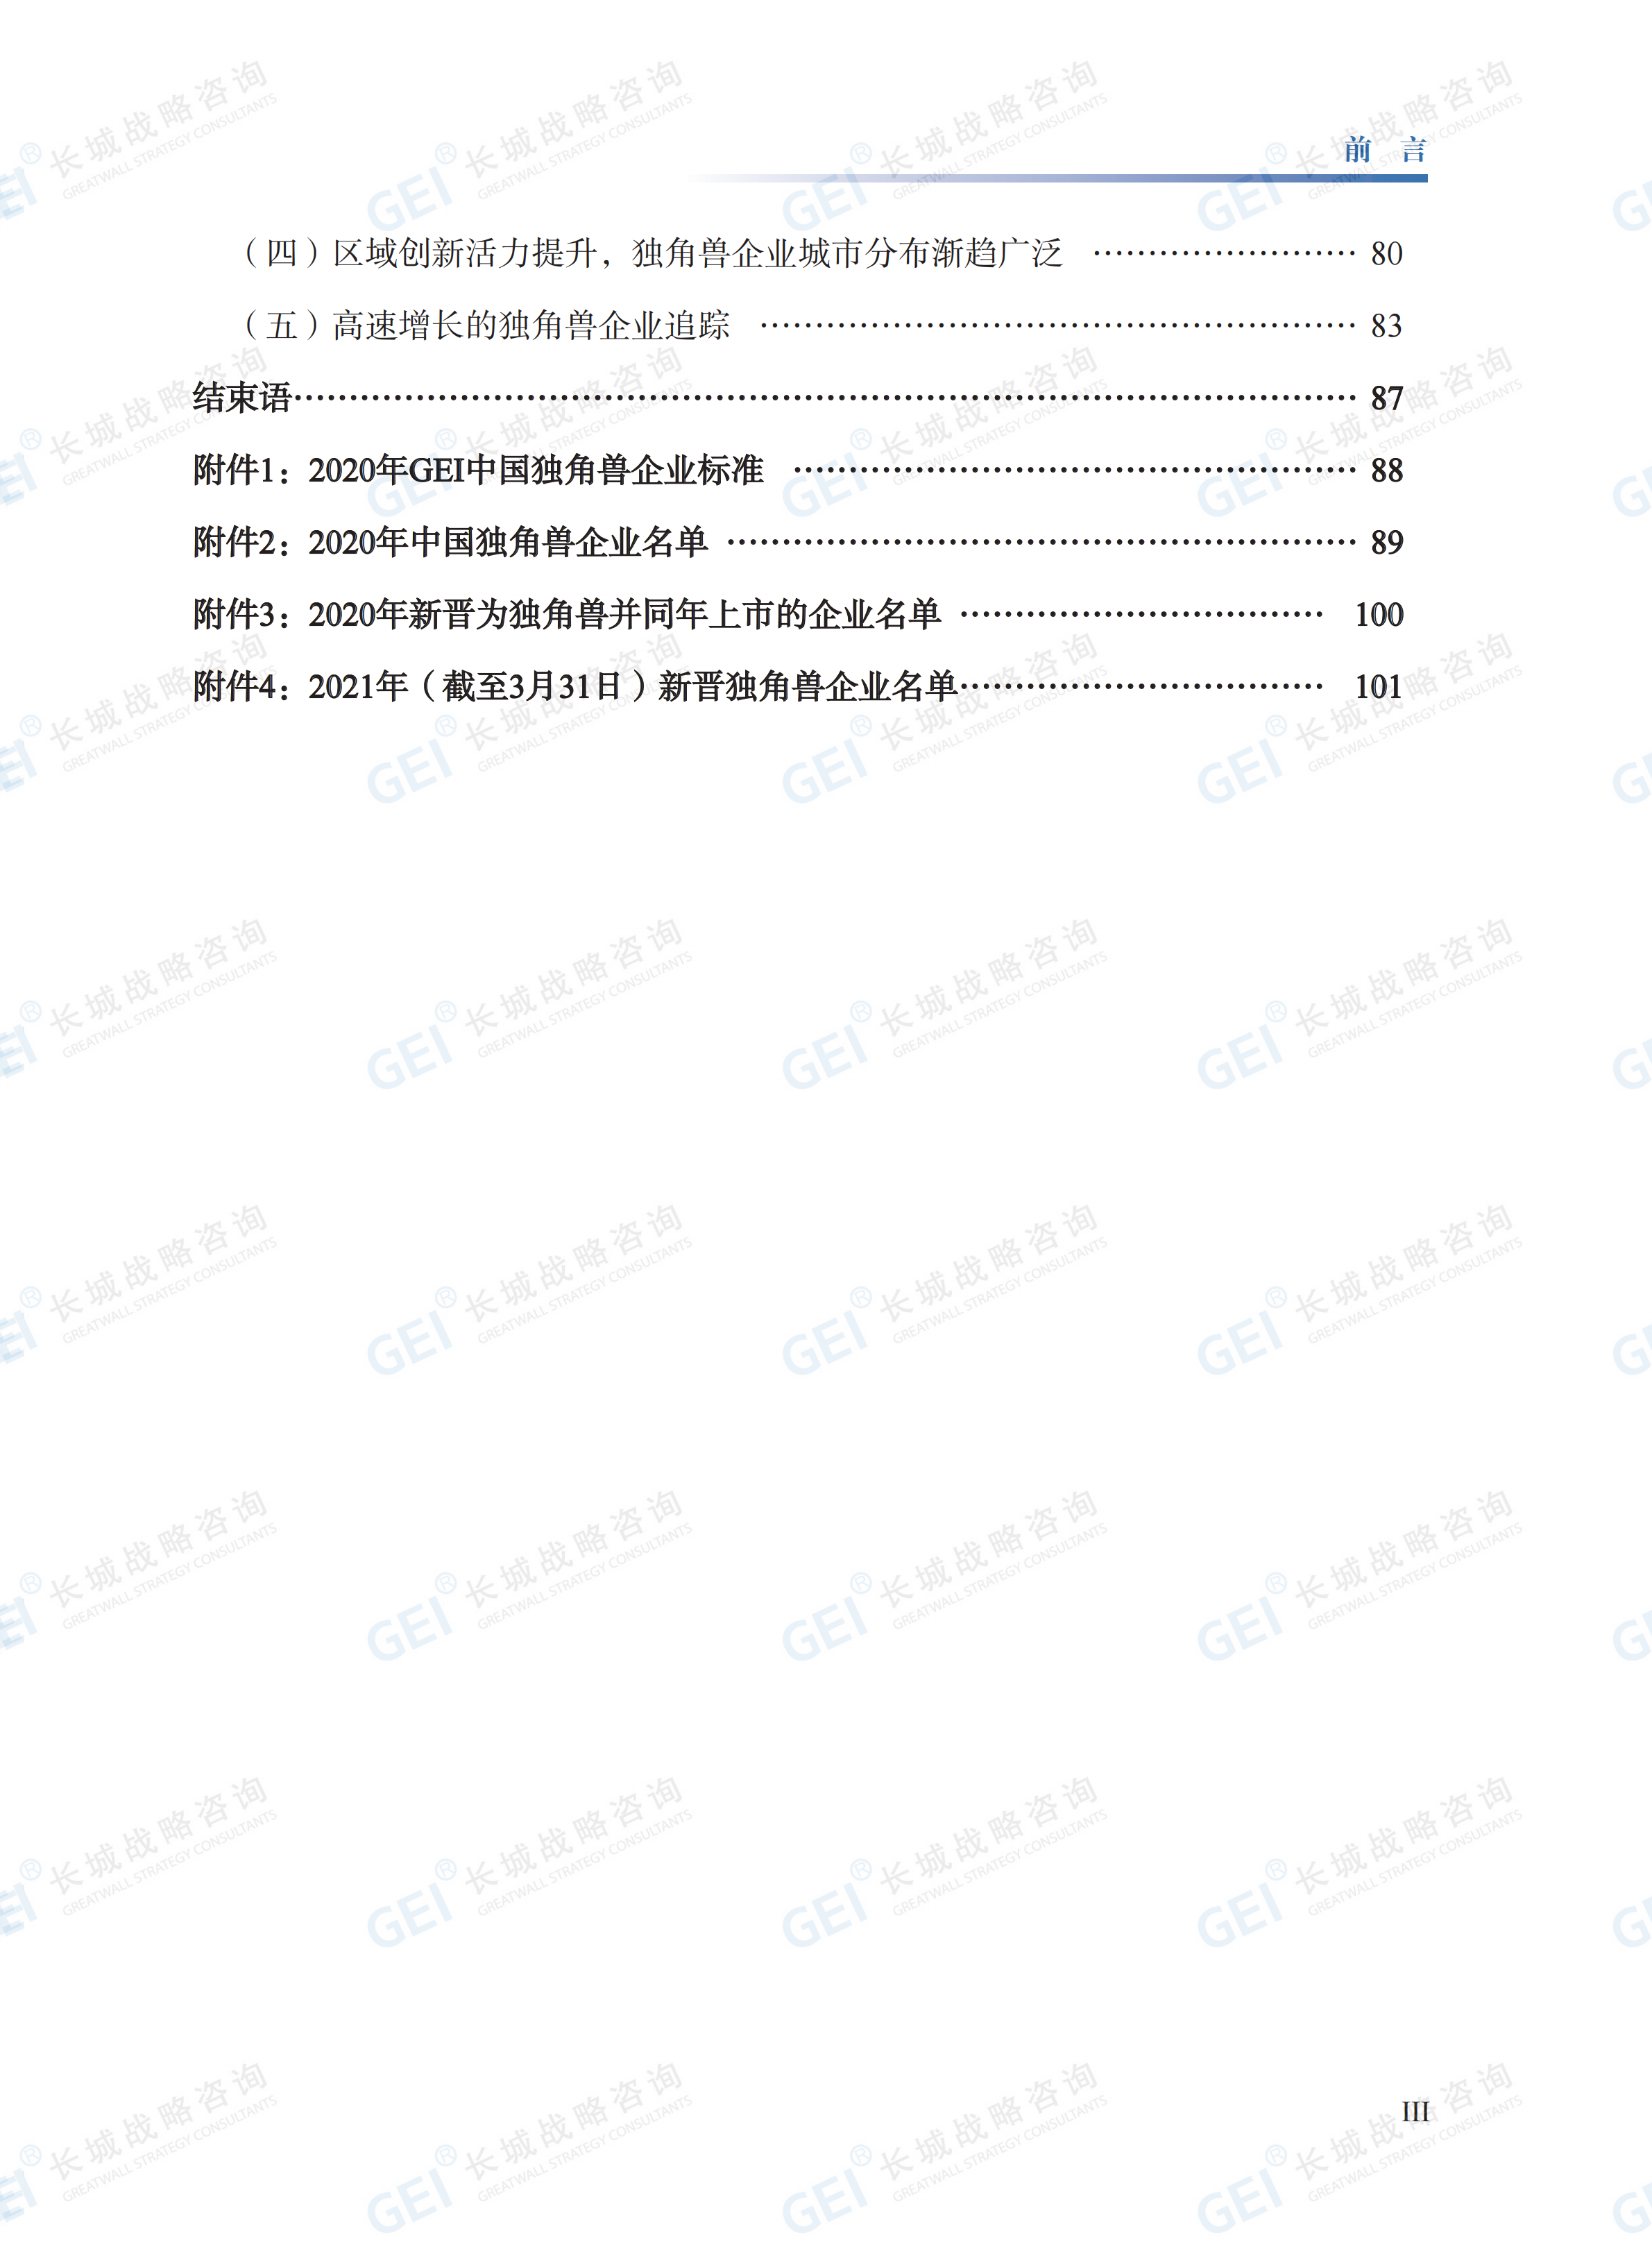 中国独角兽企业研究报告2021-水印(1)_07.png